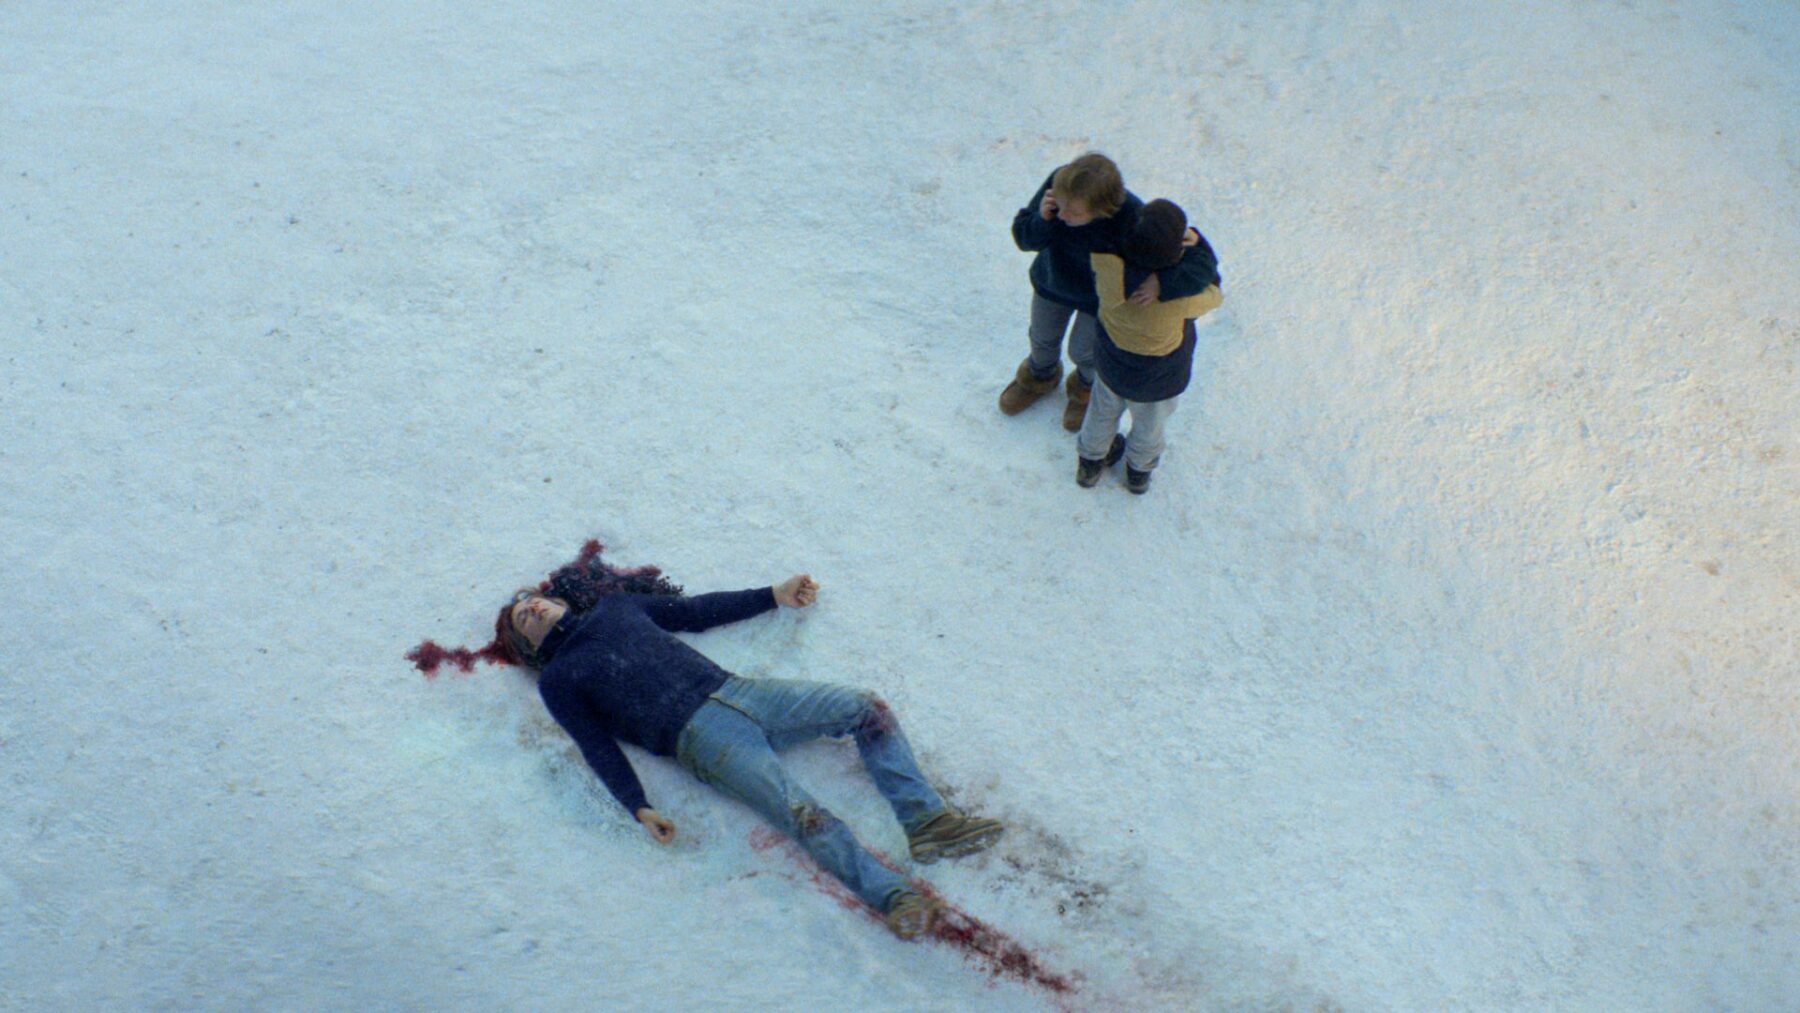 Kadr z dwoma bohaterami, którzy odnaleźli zakrwawione ciało w śniegu.